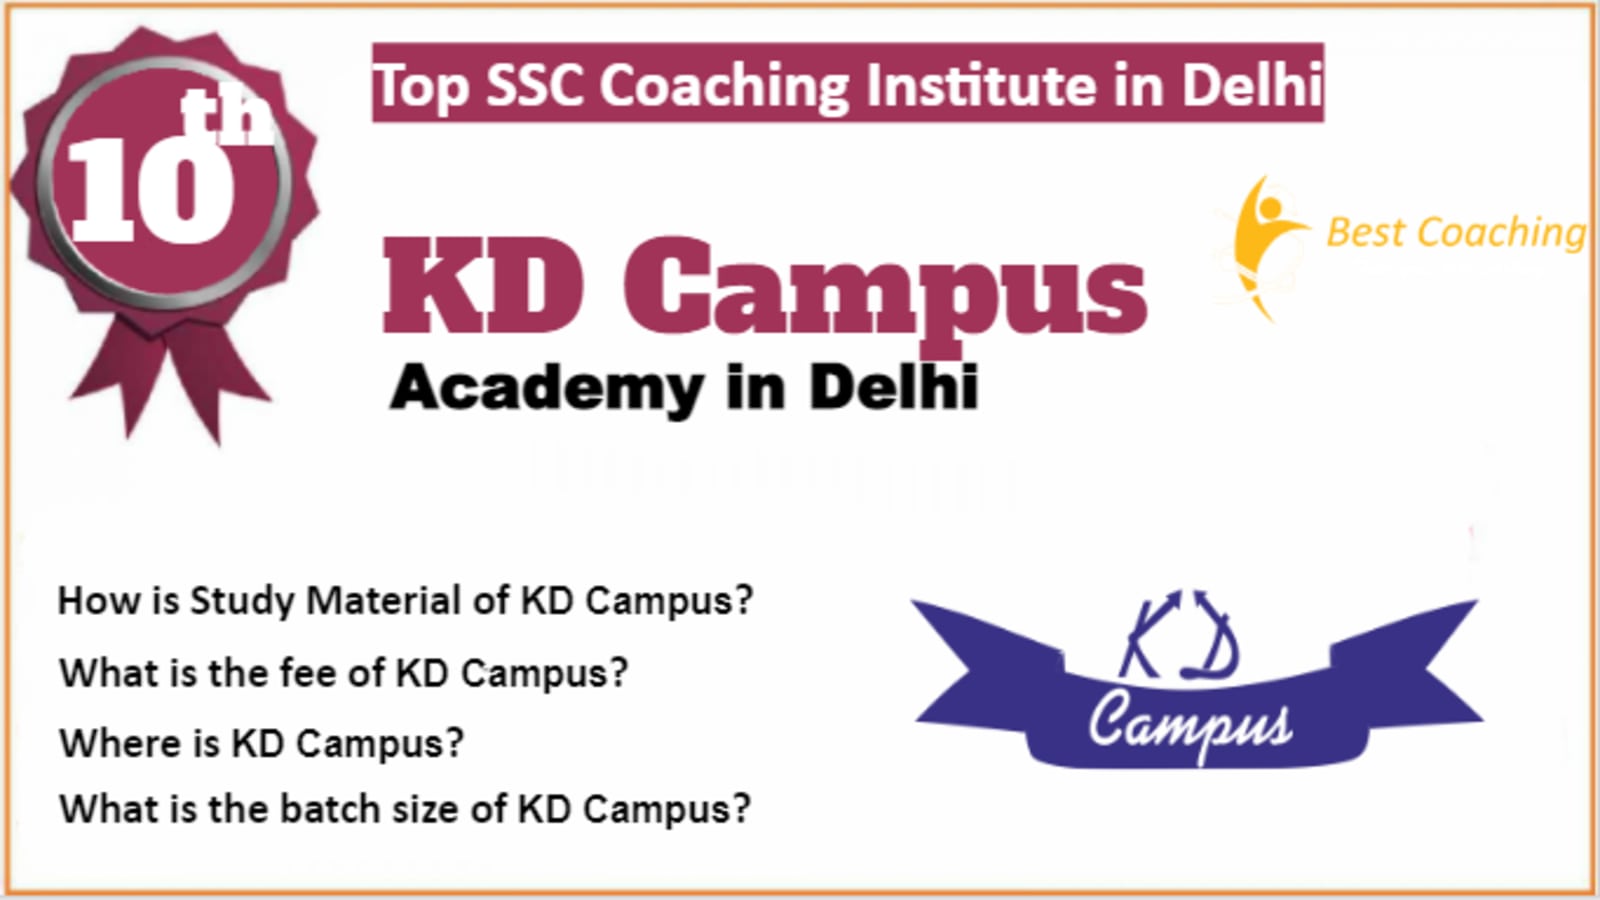 Rank 10 Best SSC Coaching In Delhi